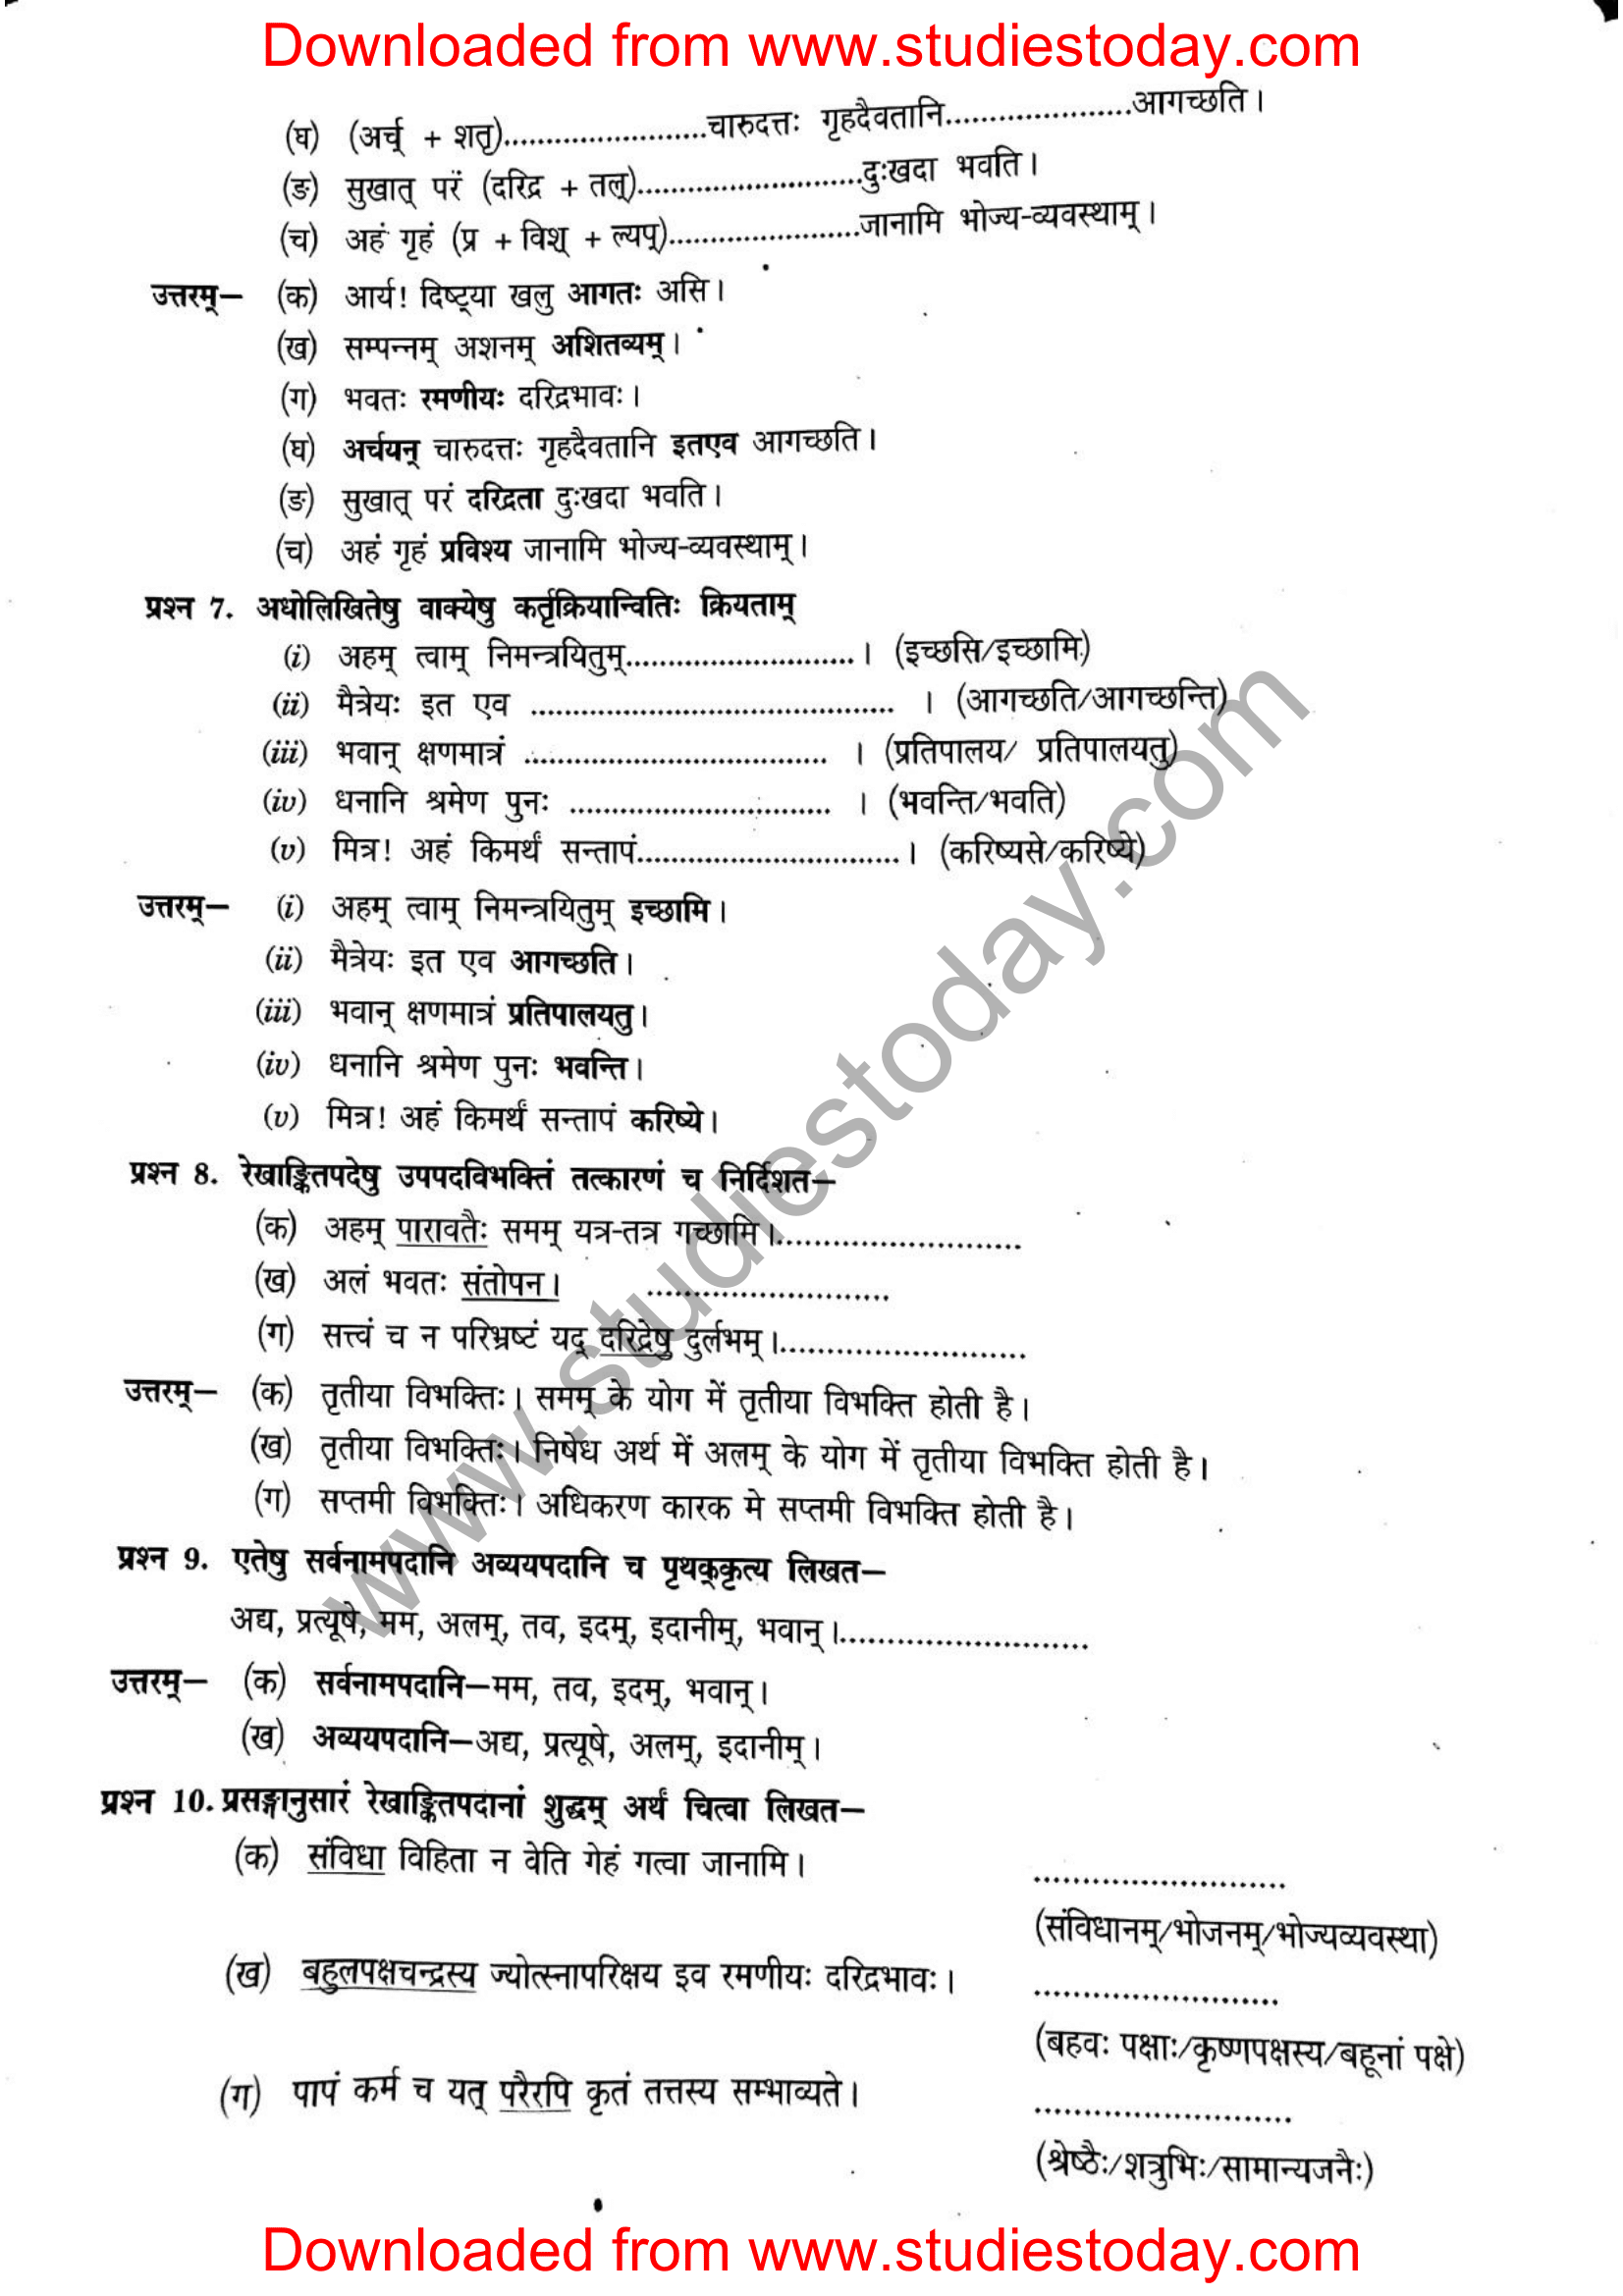 ncert-solutions-class-12-sanskrit-ritikia-chapter-7-10